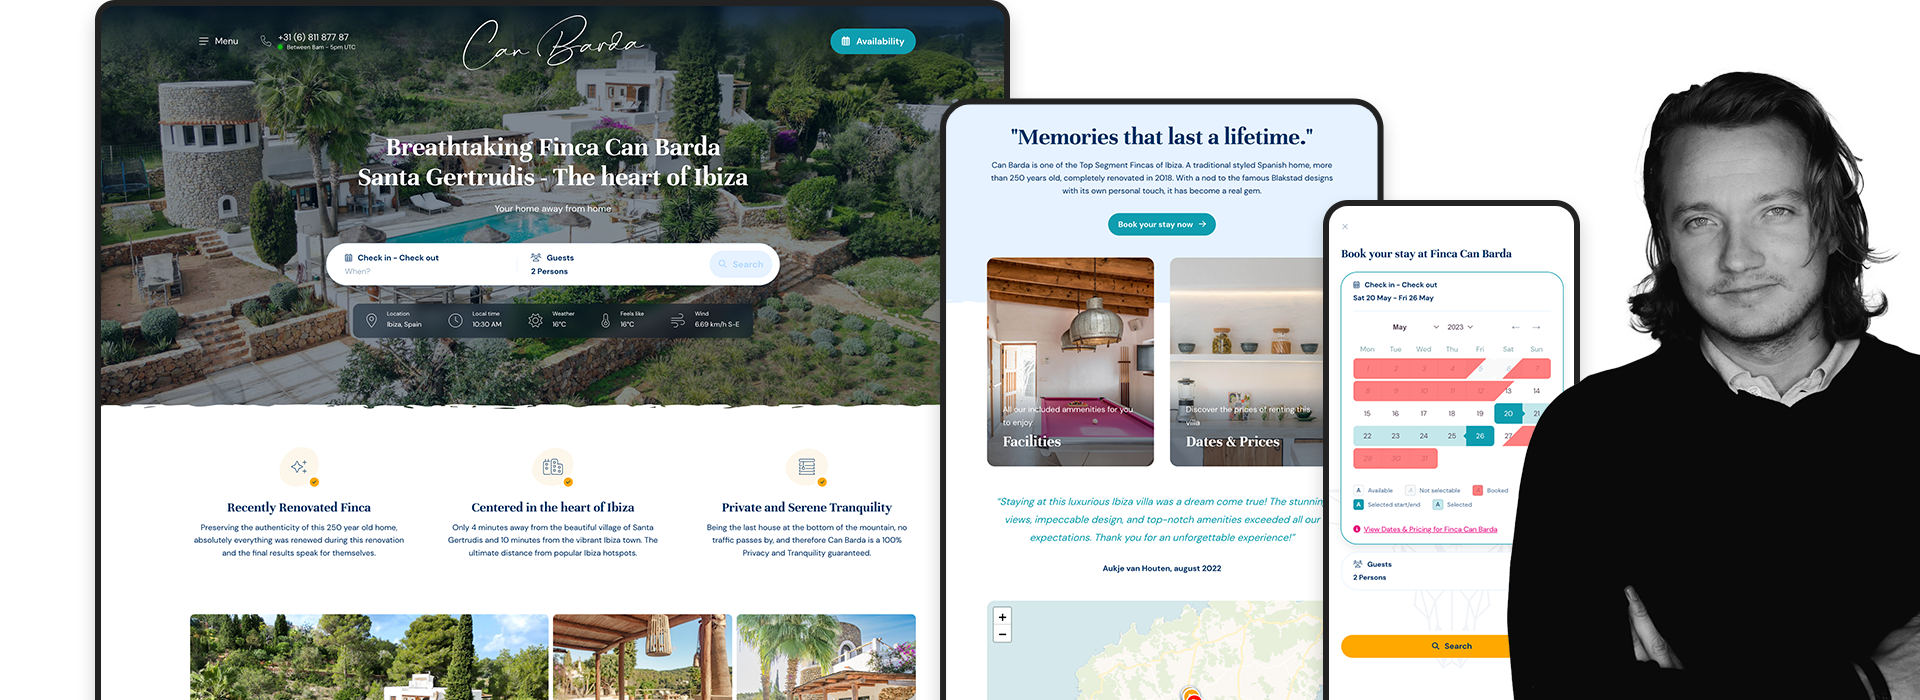 Boek een onvergetelijke vakantie in de mooiste luxe villa die Ibiza te bieden heeft